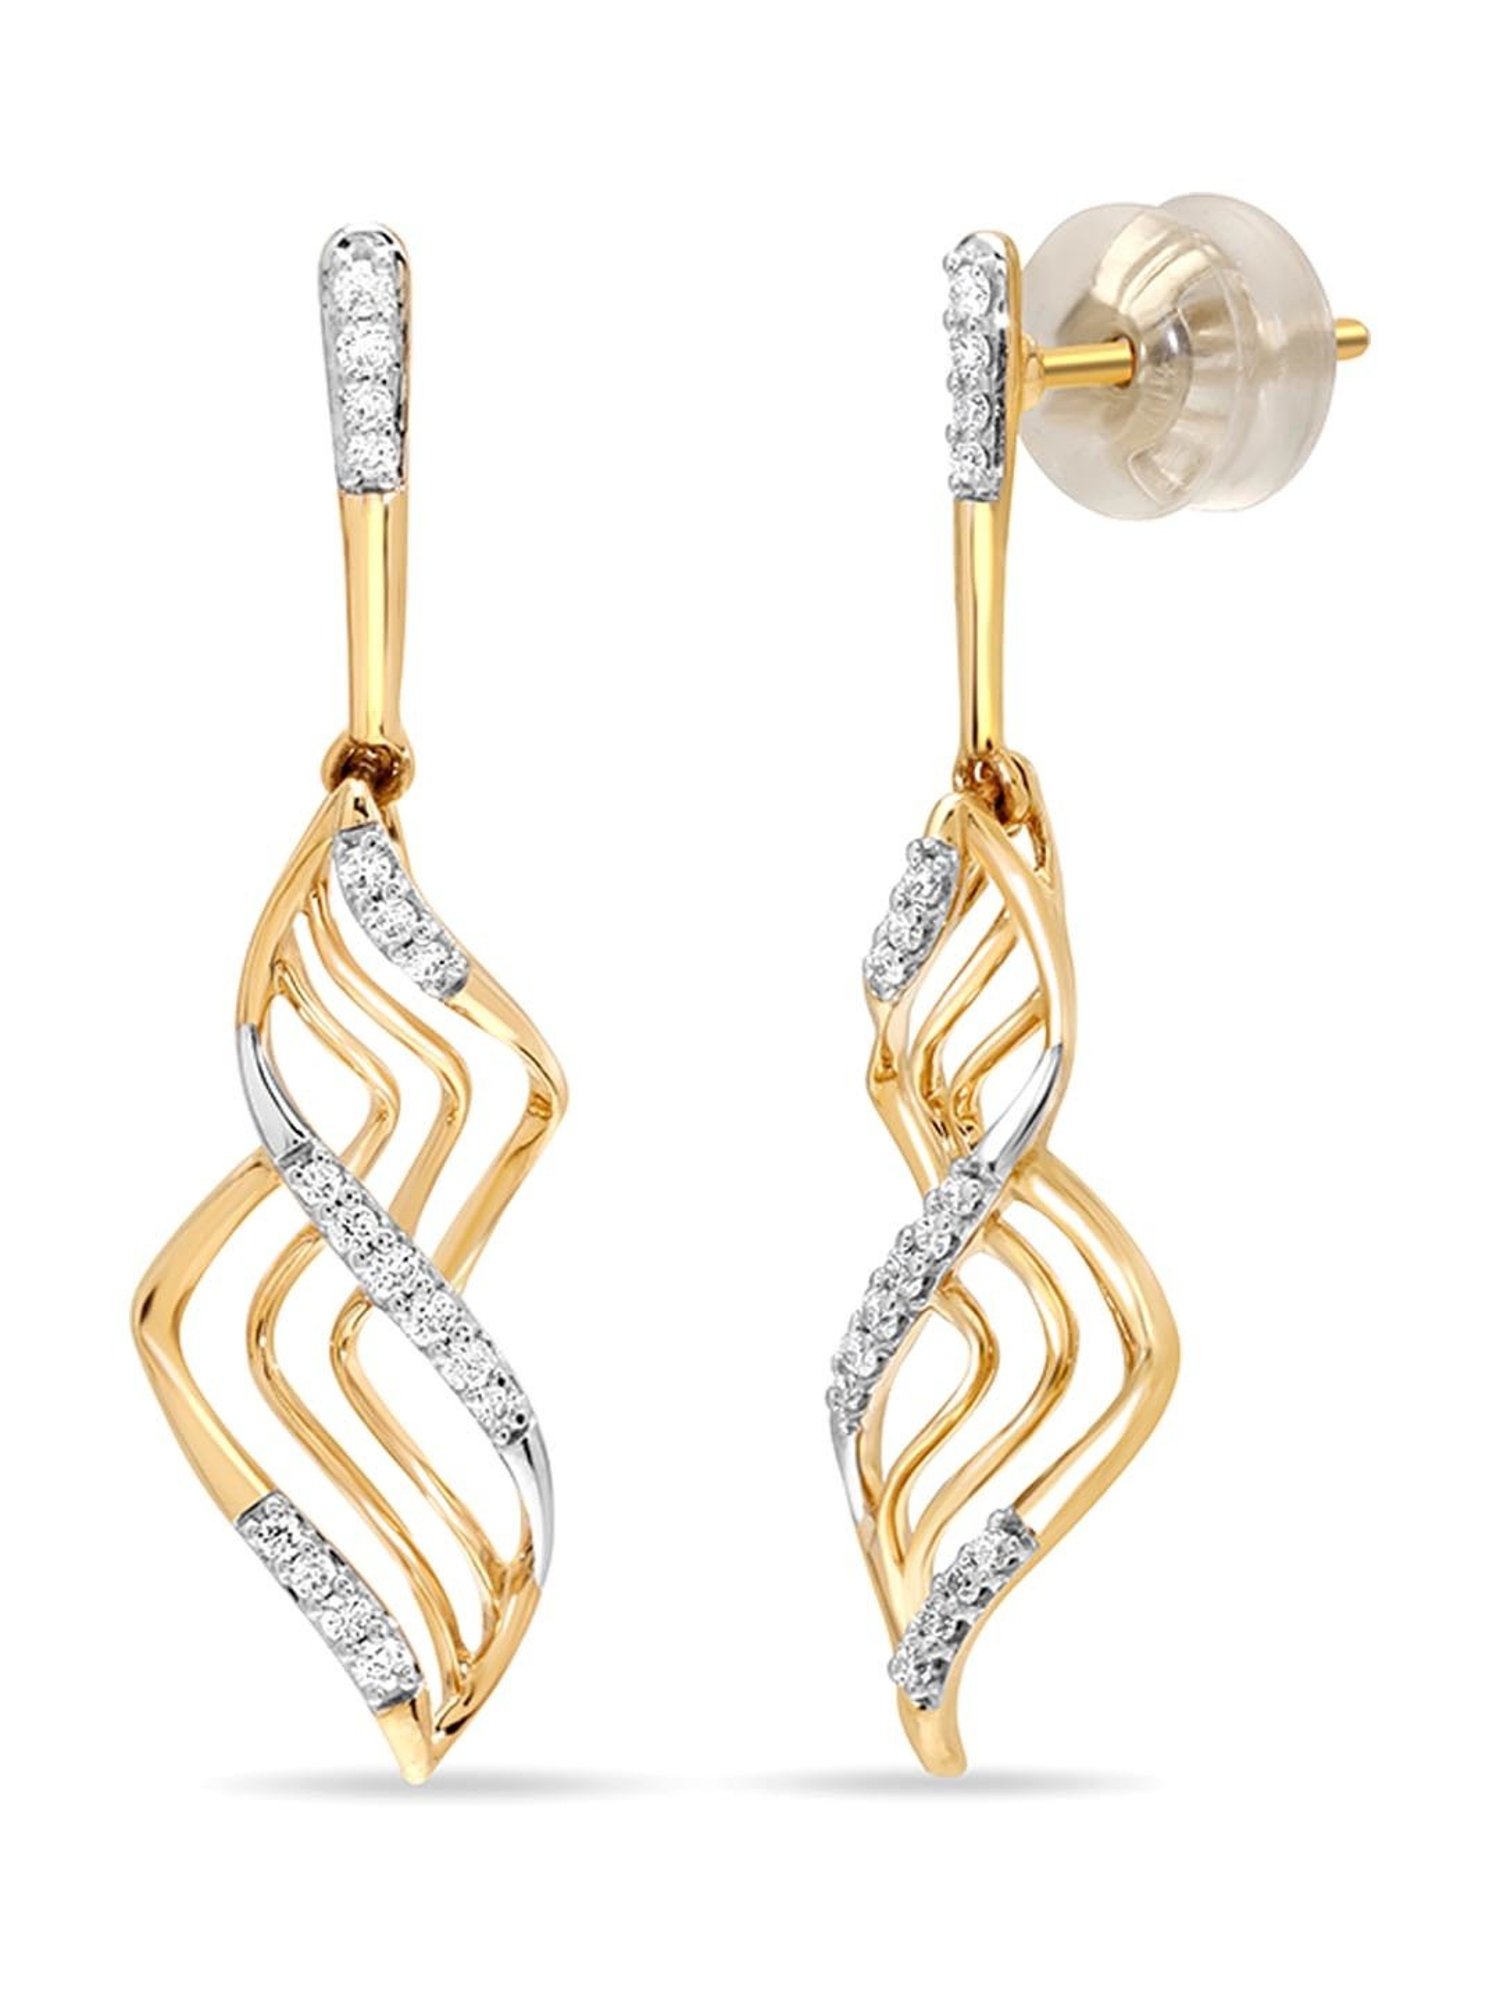 Buy American Diamond Earrings | AD Earrings 17 – Nithilah